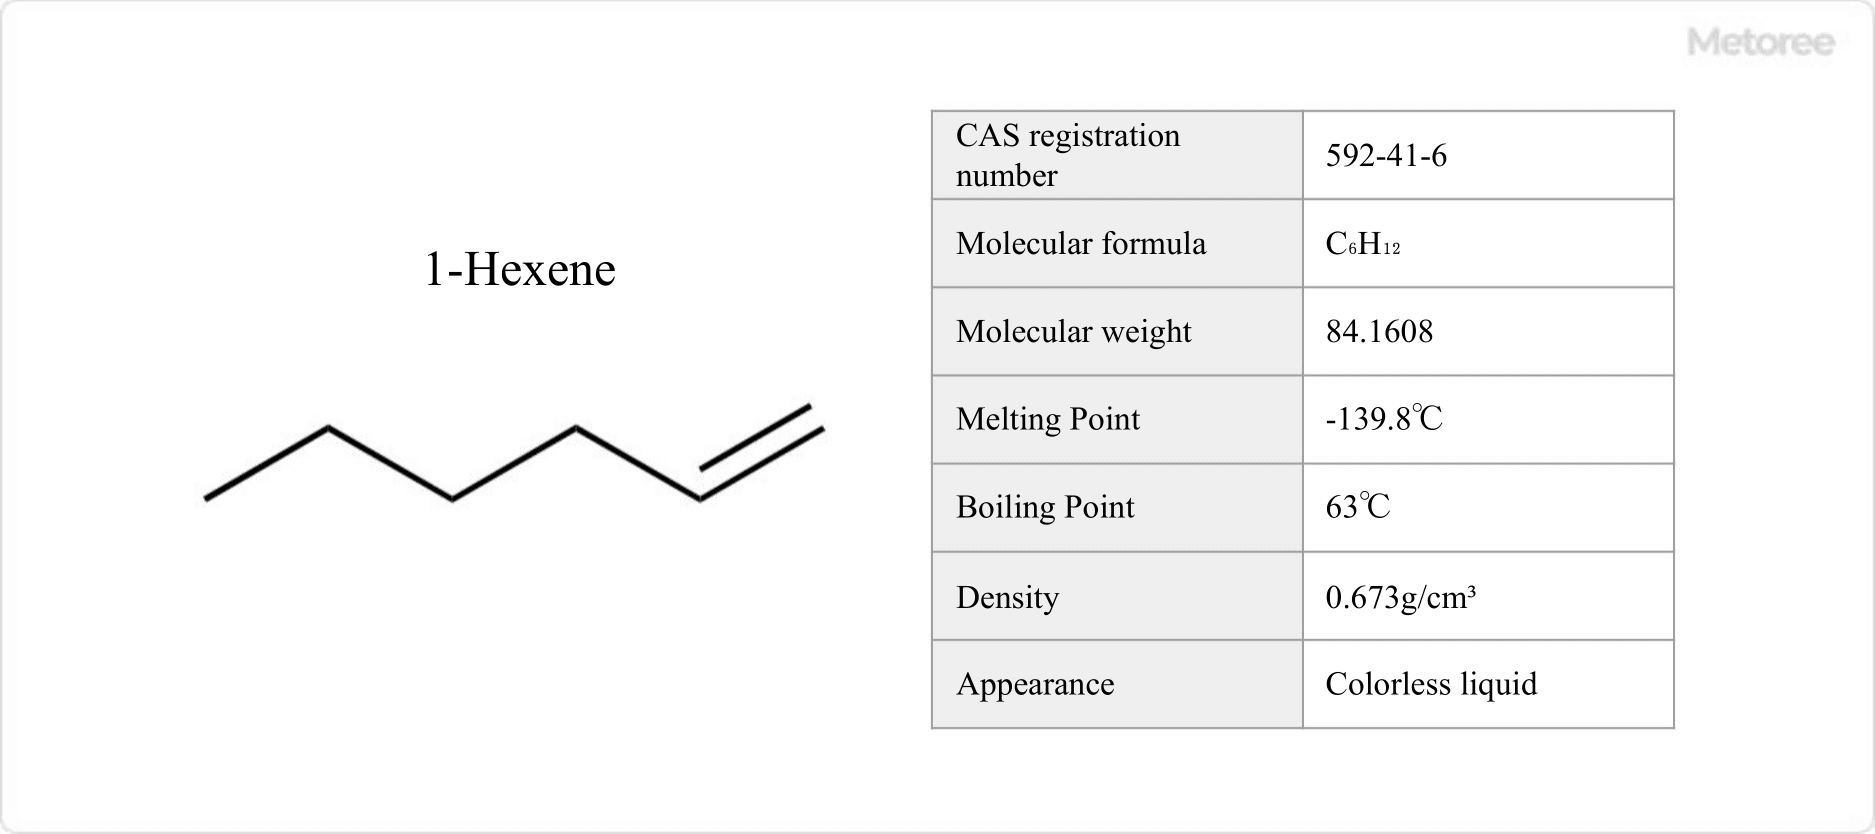 Figure 1. 1-Hexene Basic Information